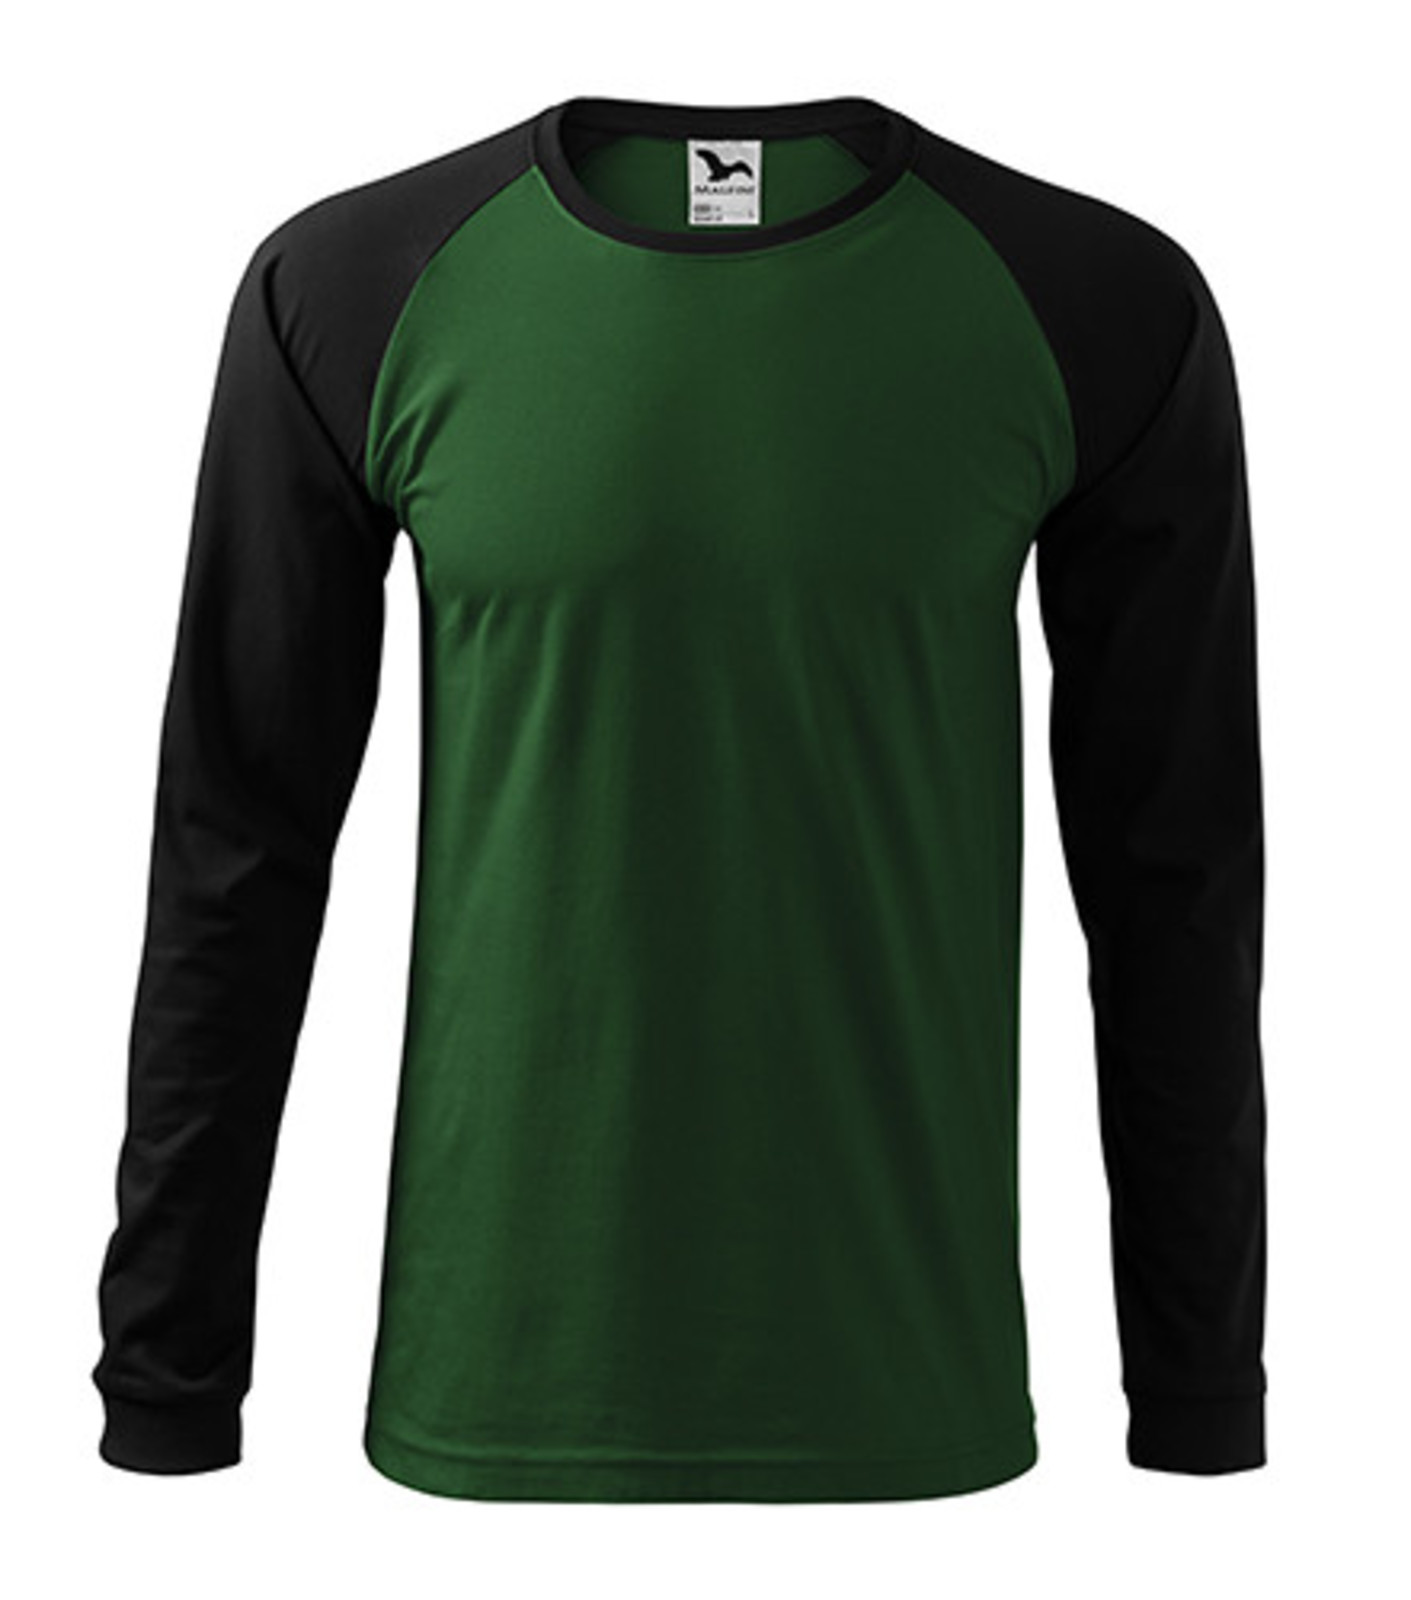 Unisex tričko s dlhým rukávom Rimeck Street LS 130 - veľkosť: XL, farba: zelená/čierna